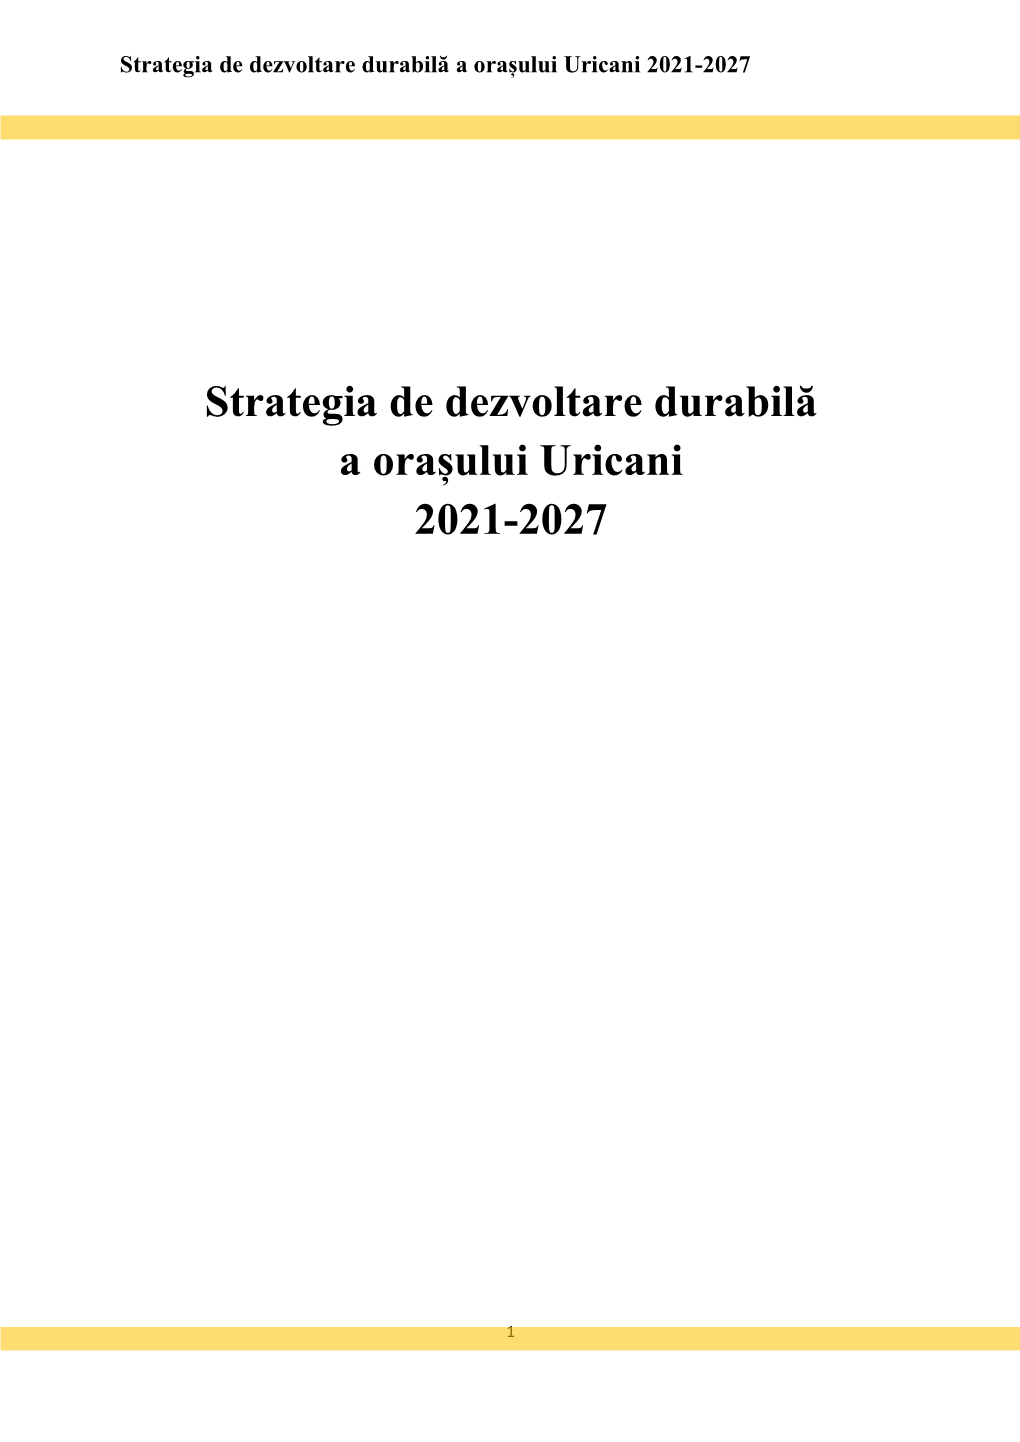 Strategia De Dezvoltare Durabilă a Orașului Uricani 2021-2027